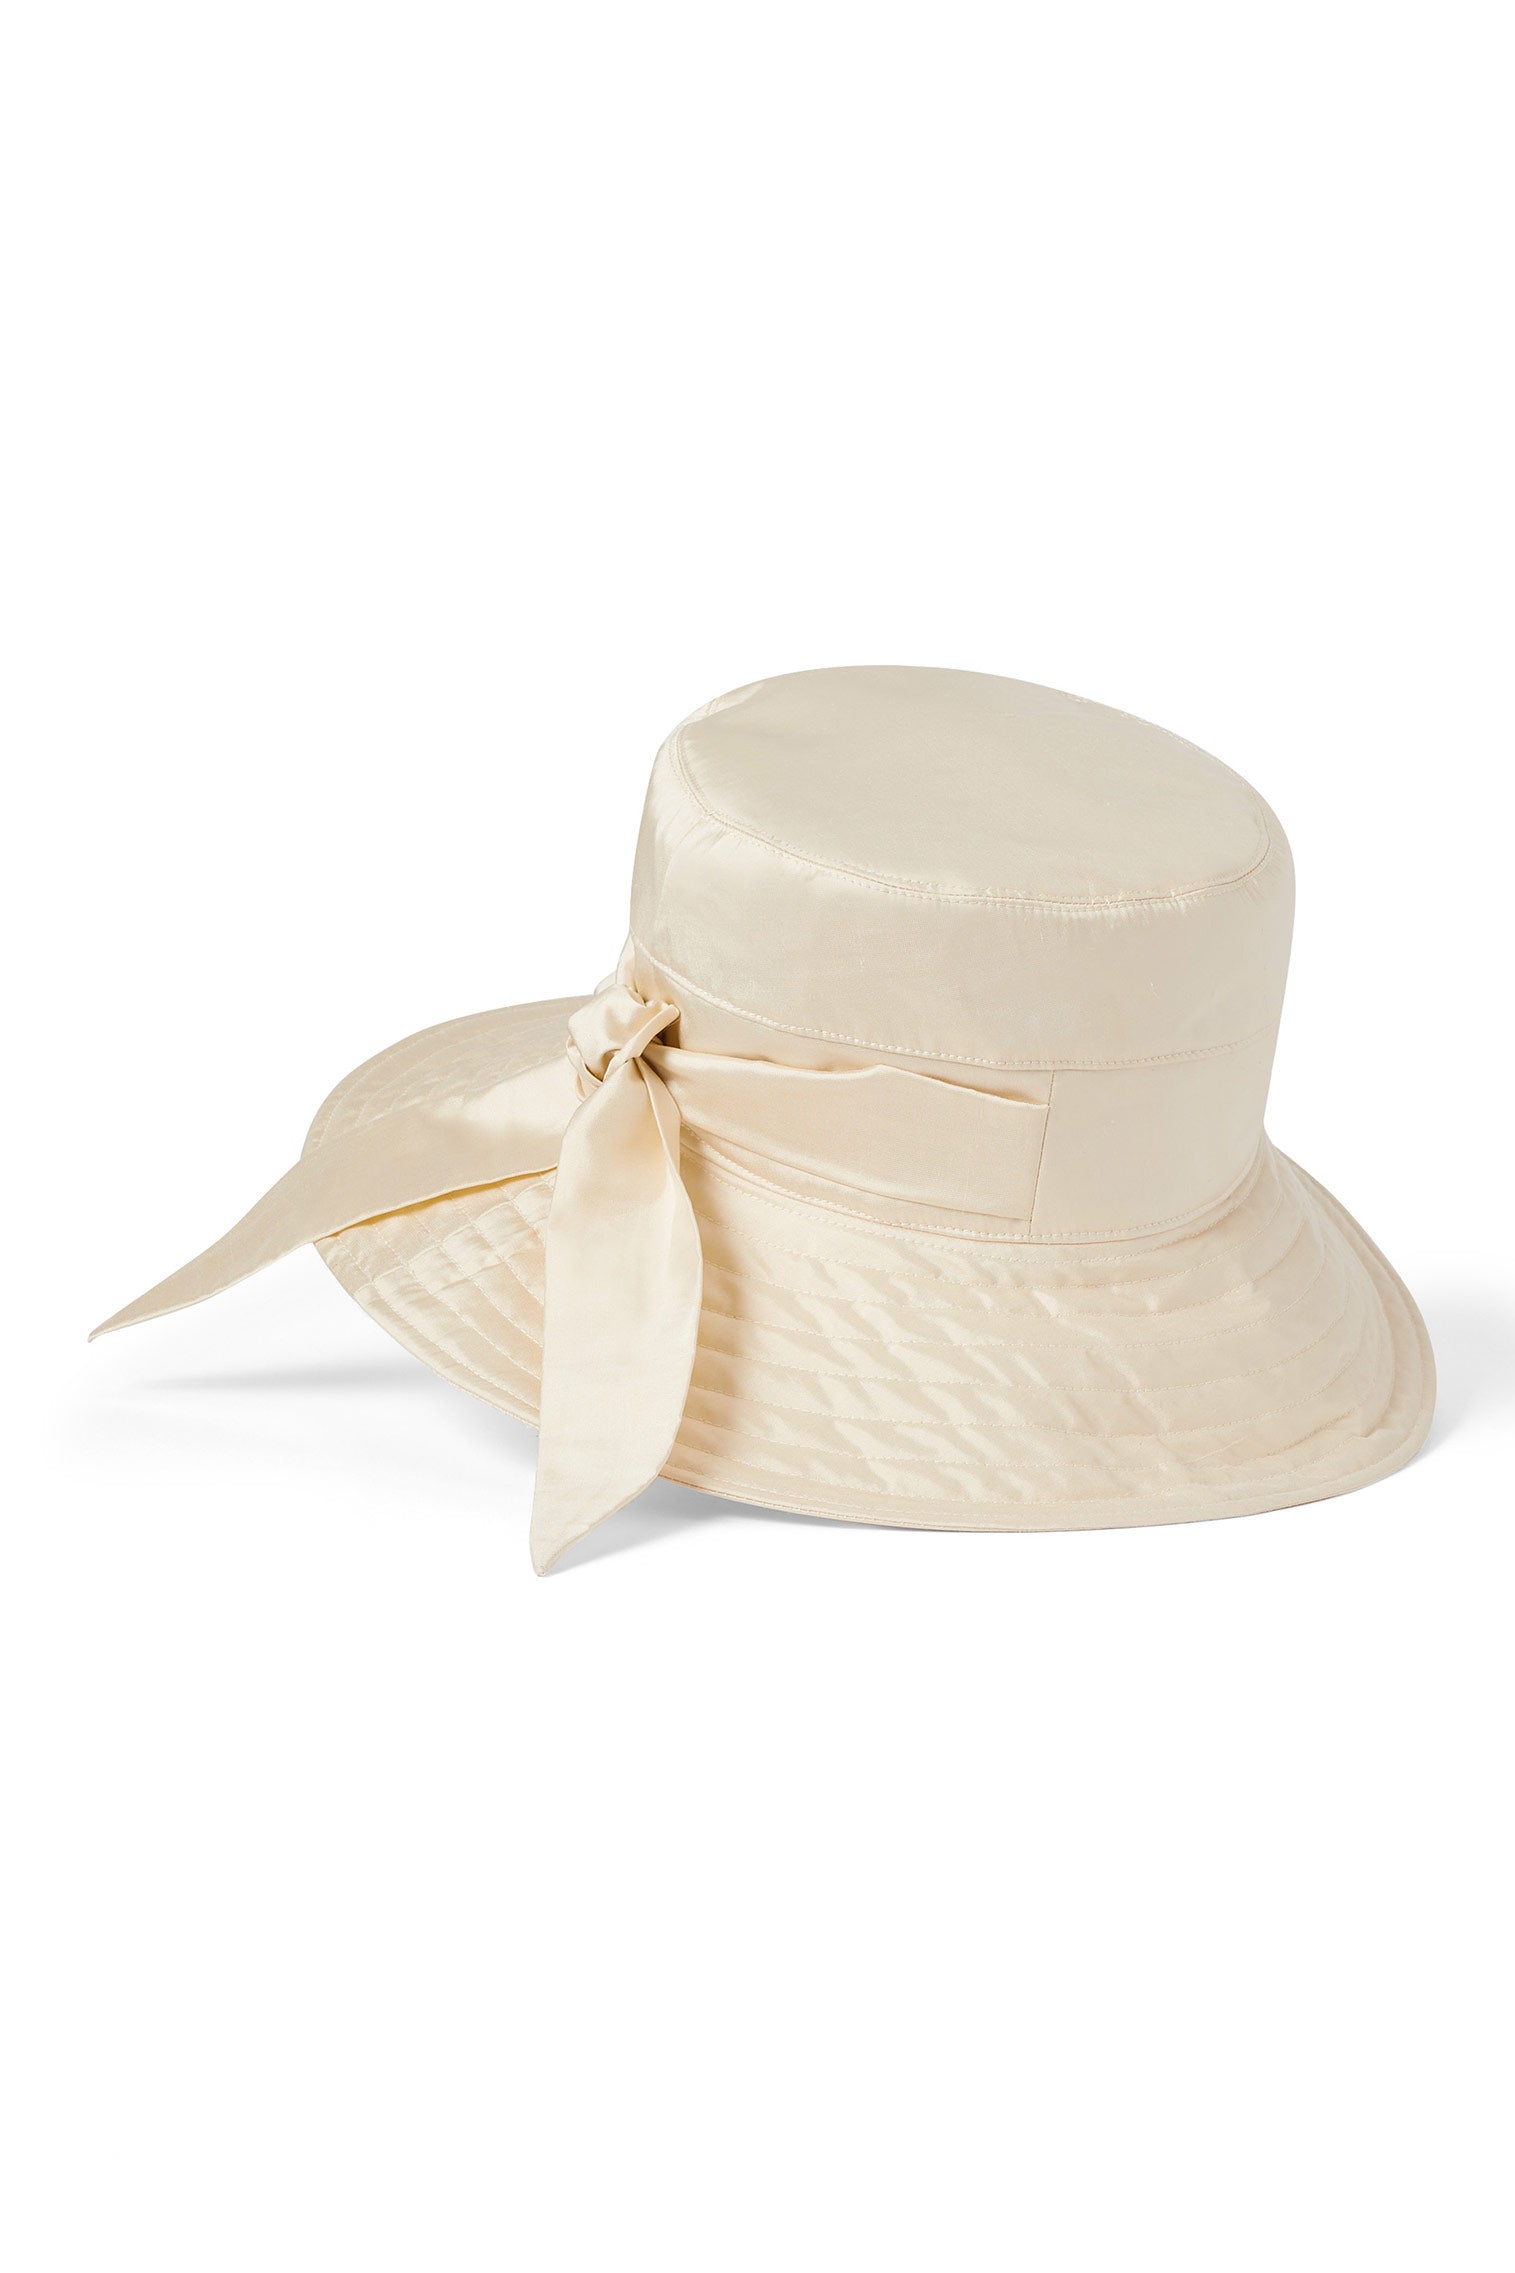 Brigitte Silk Sun Hat - Packable Hats for Travel - Lock & Co. Hatters London UK